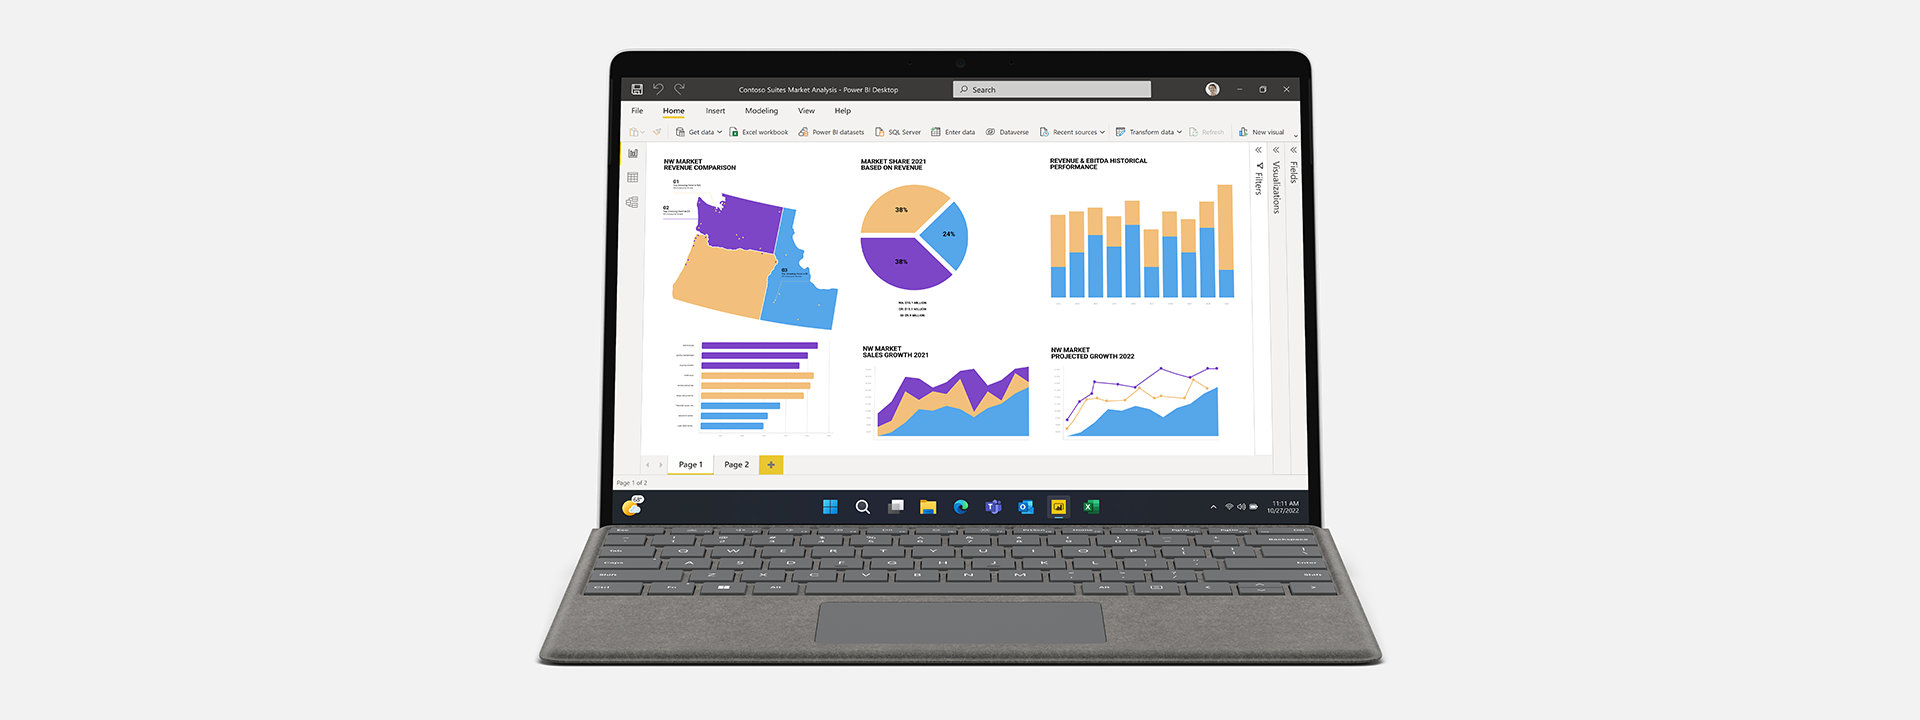 O Surface Pro 9 para Empresas com o Microsoft Power BI no ecrã. 